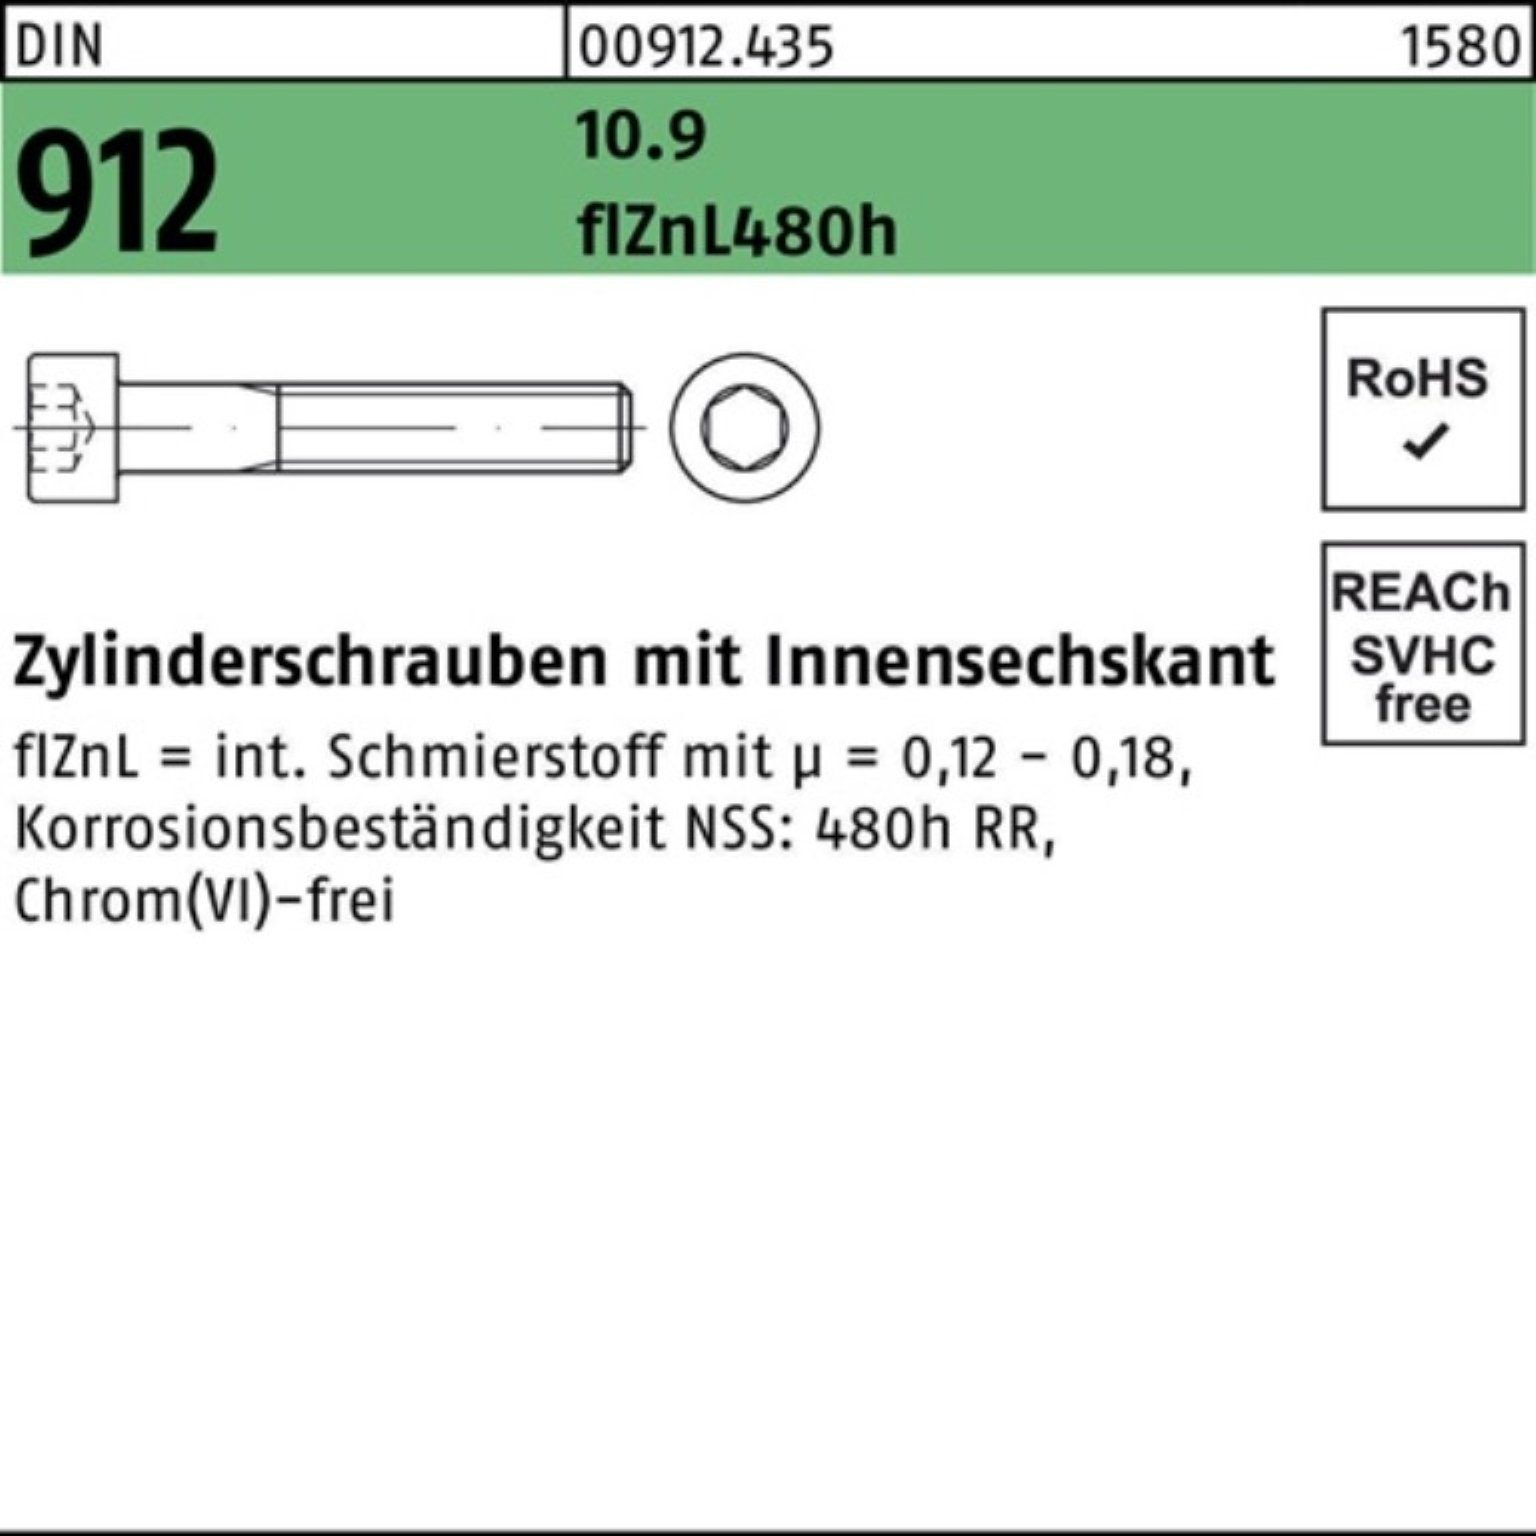 Reyher Zylinderschraube 500er Pack DIN M6x12 10.9 Innen-6kt 912 Zylinderschraube flZnL/nc/x/x